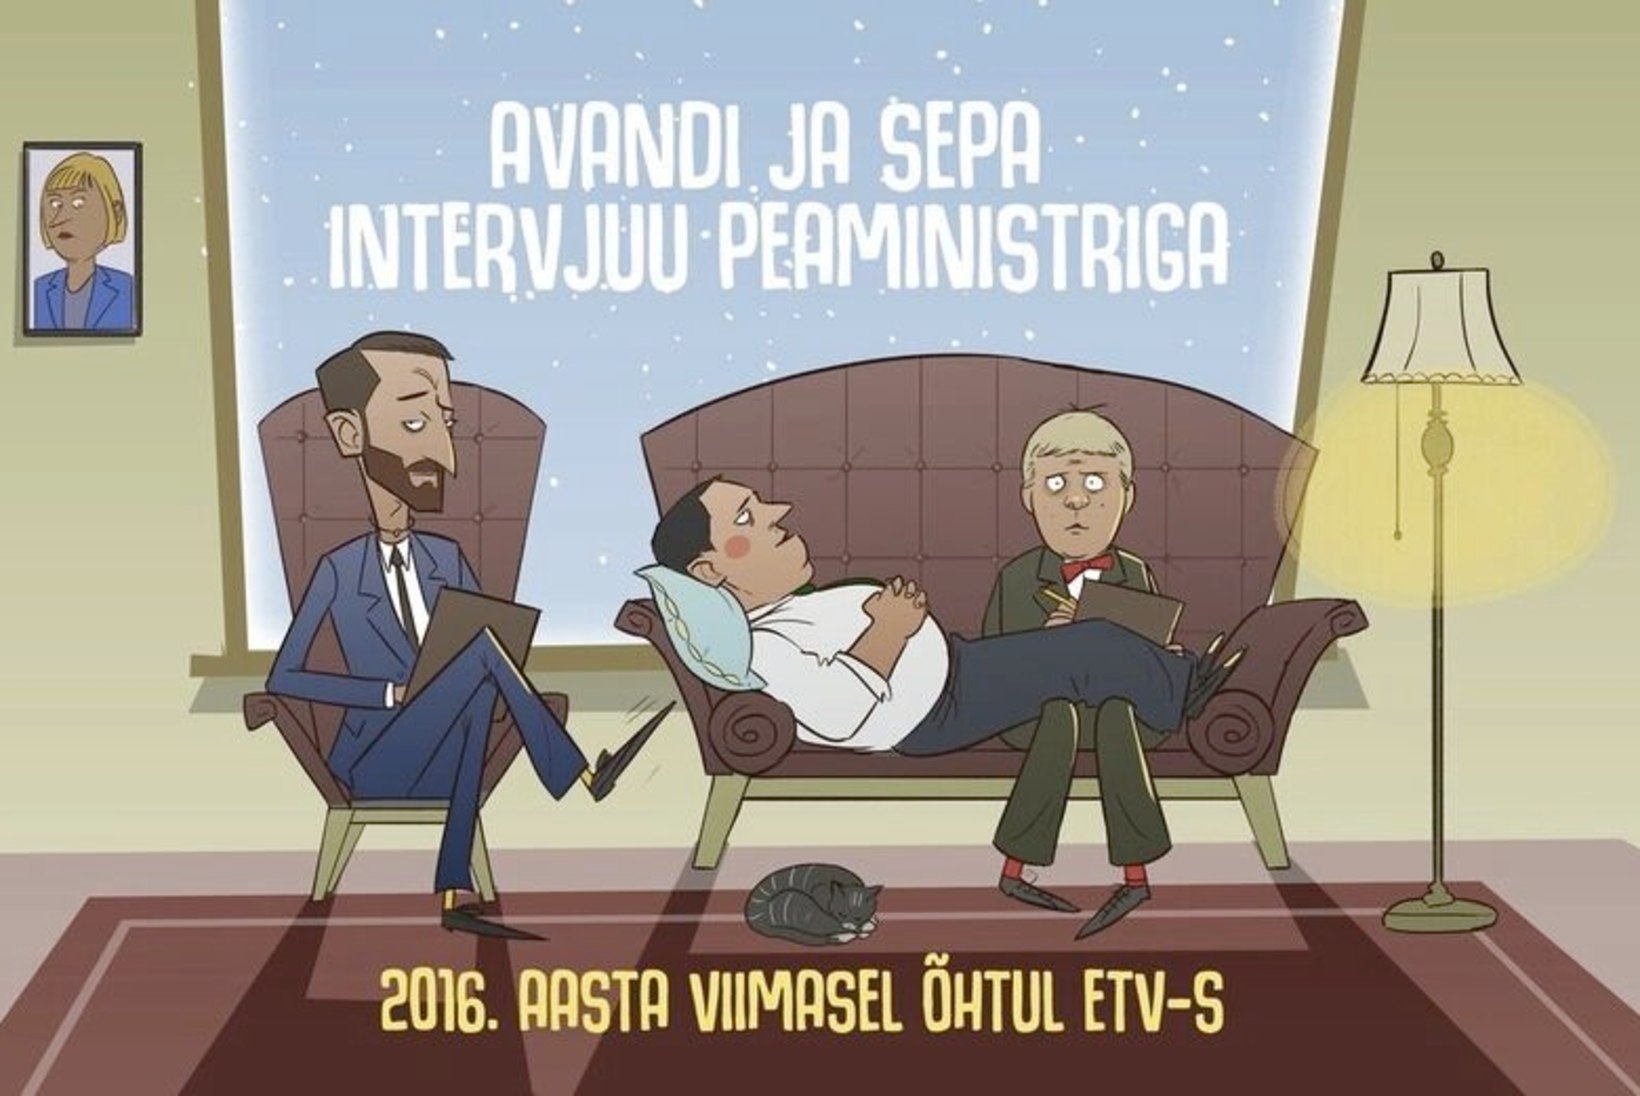 "Tujurikkuja" tandem Ott Sepp ja Märt Avandi intervjueerivad aastavahetusel peaministrit